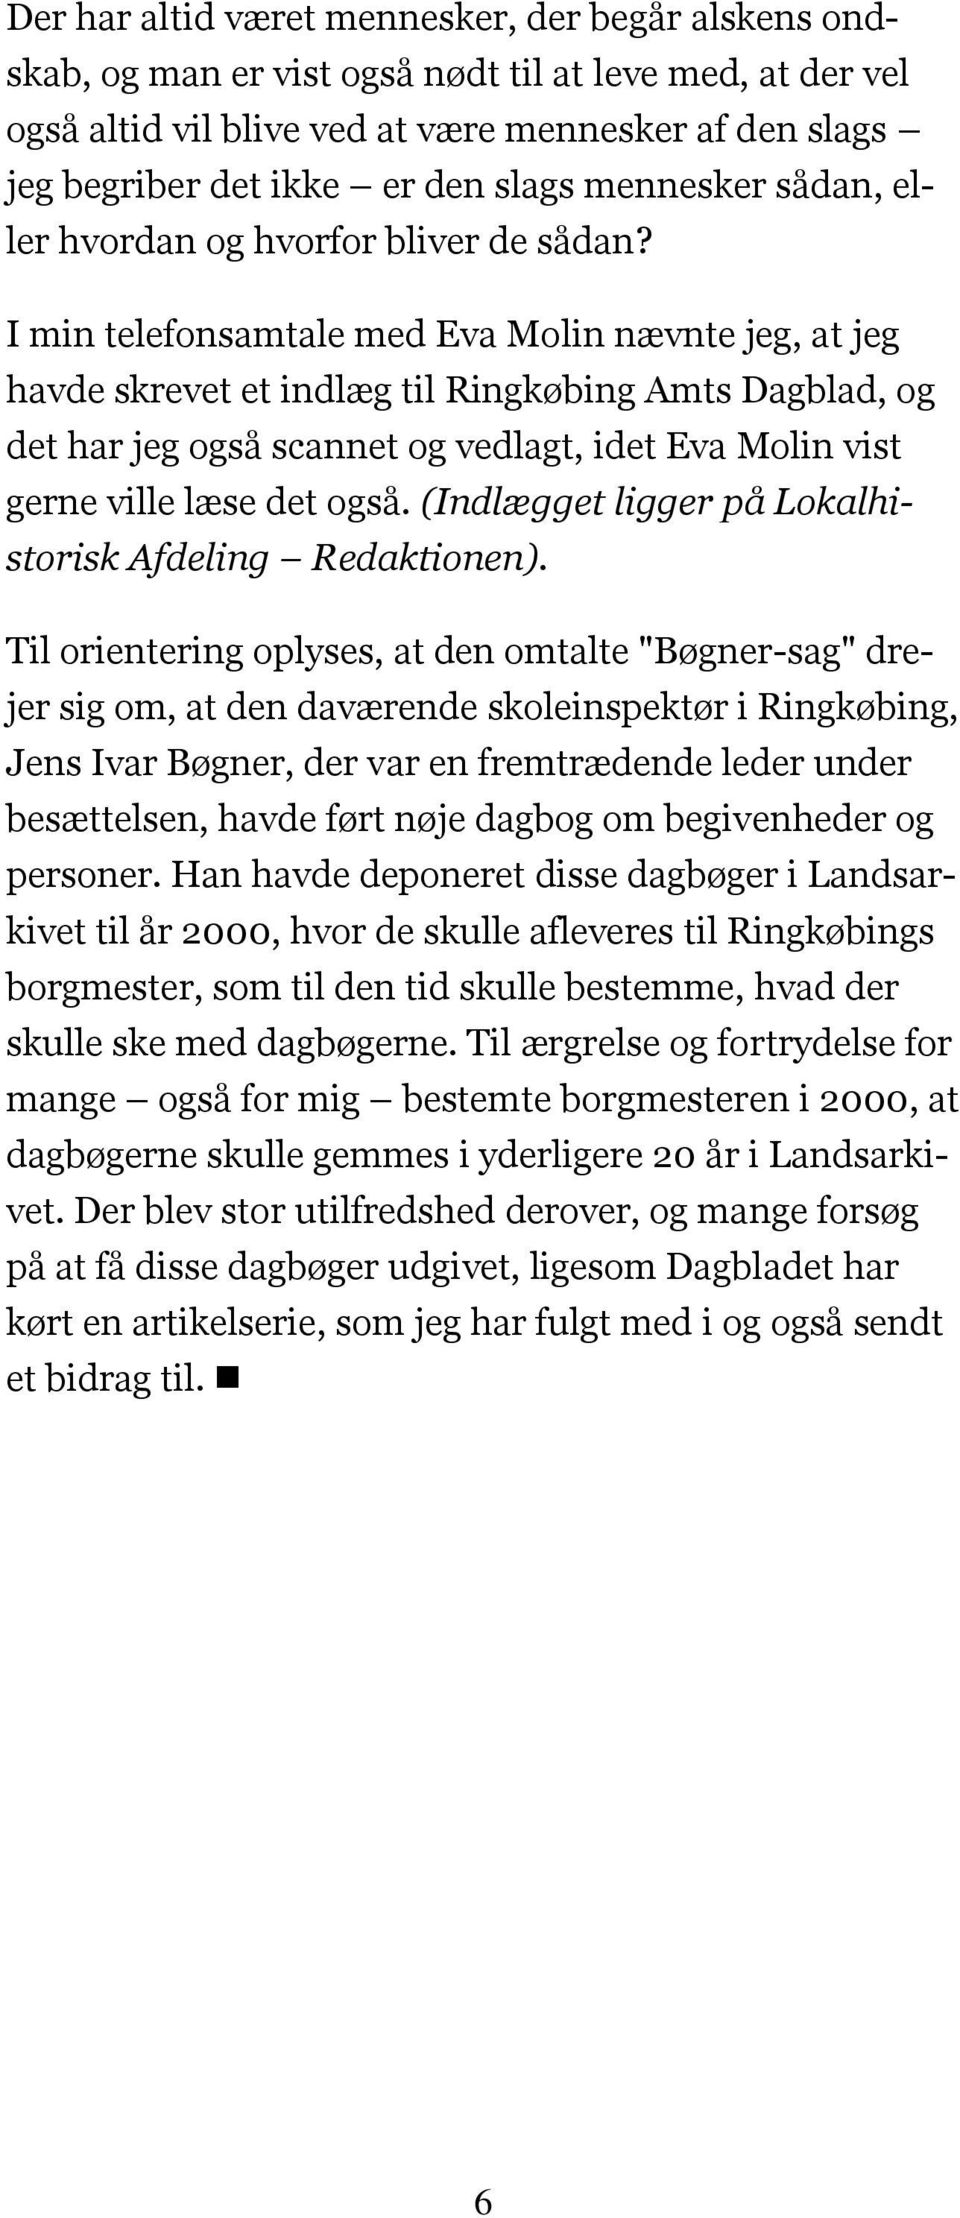 I min telefonsamtale med Eva Molin nævnte jeg, at jeg havde skrevet et indlæg til Ringkøbing Amts Dagblad, og det har jeg også scannet og vedlagt, idet Eva Molin vist gerne ville læse det også.